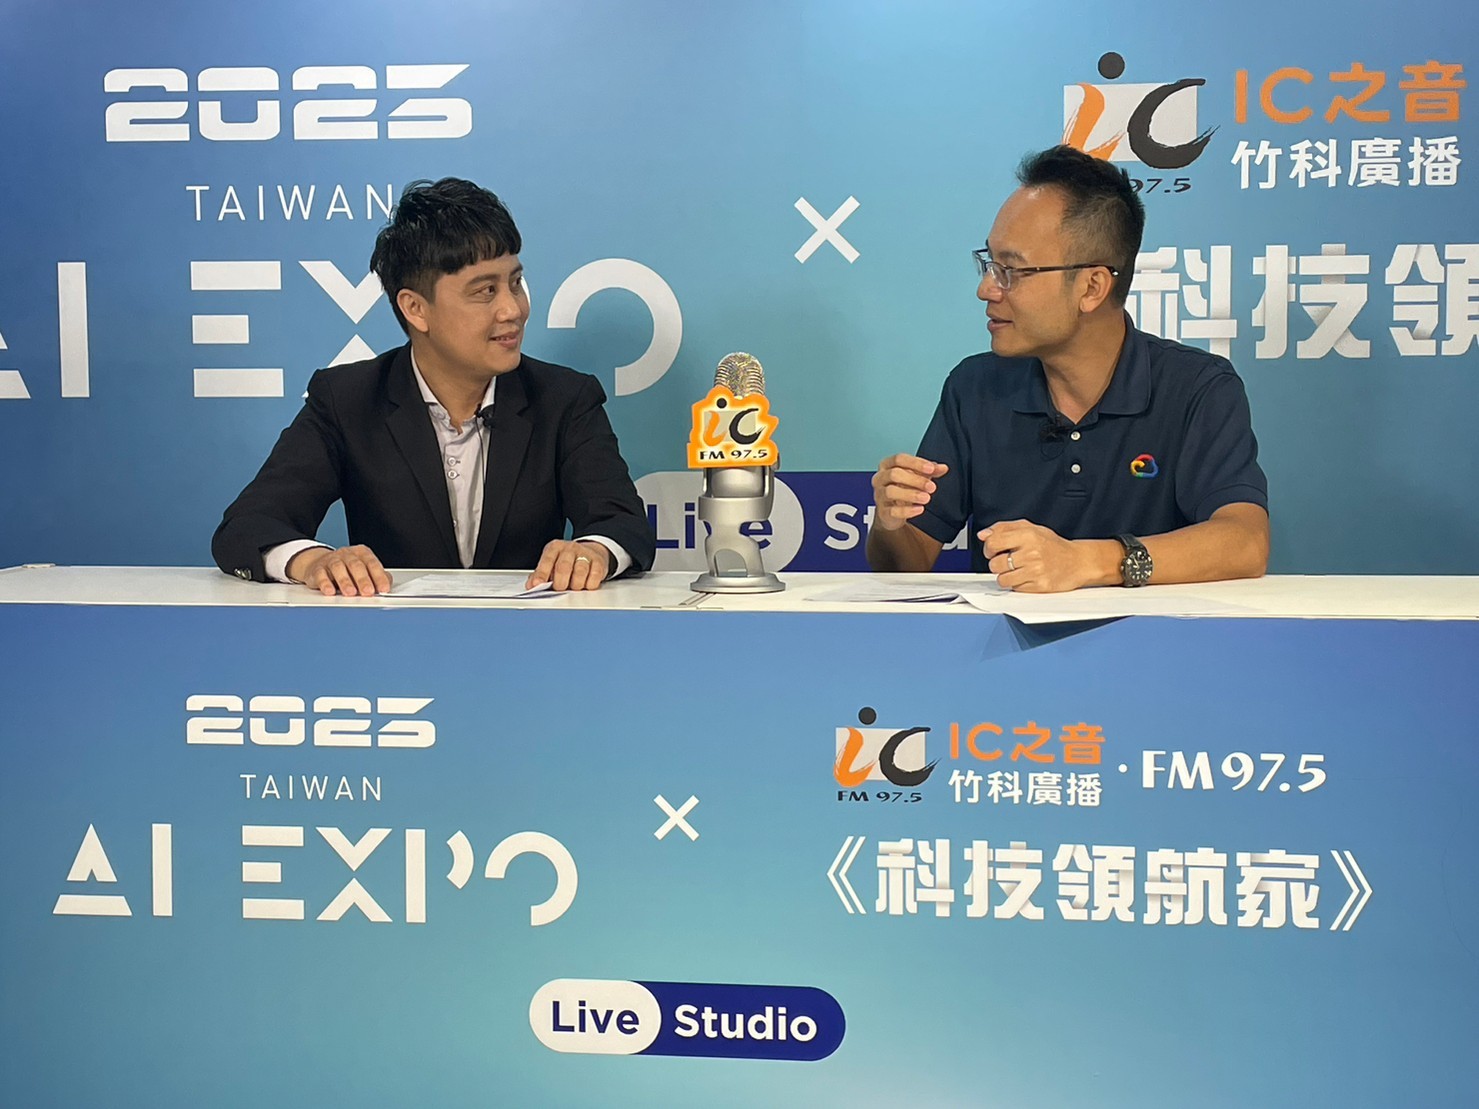 代班主持人李知昂與Google Cloud台灣技術副總林書平(右)，在AI EXPO直播訪談現場